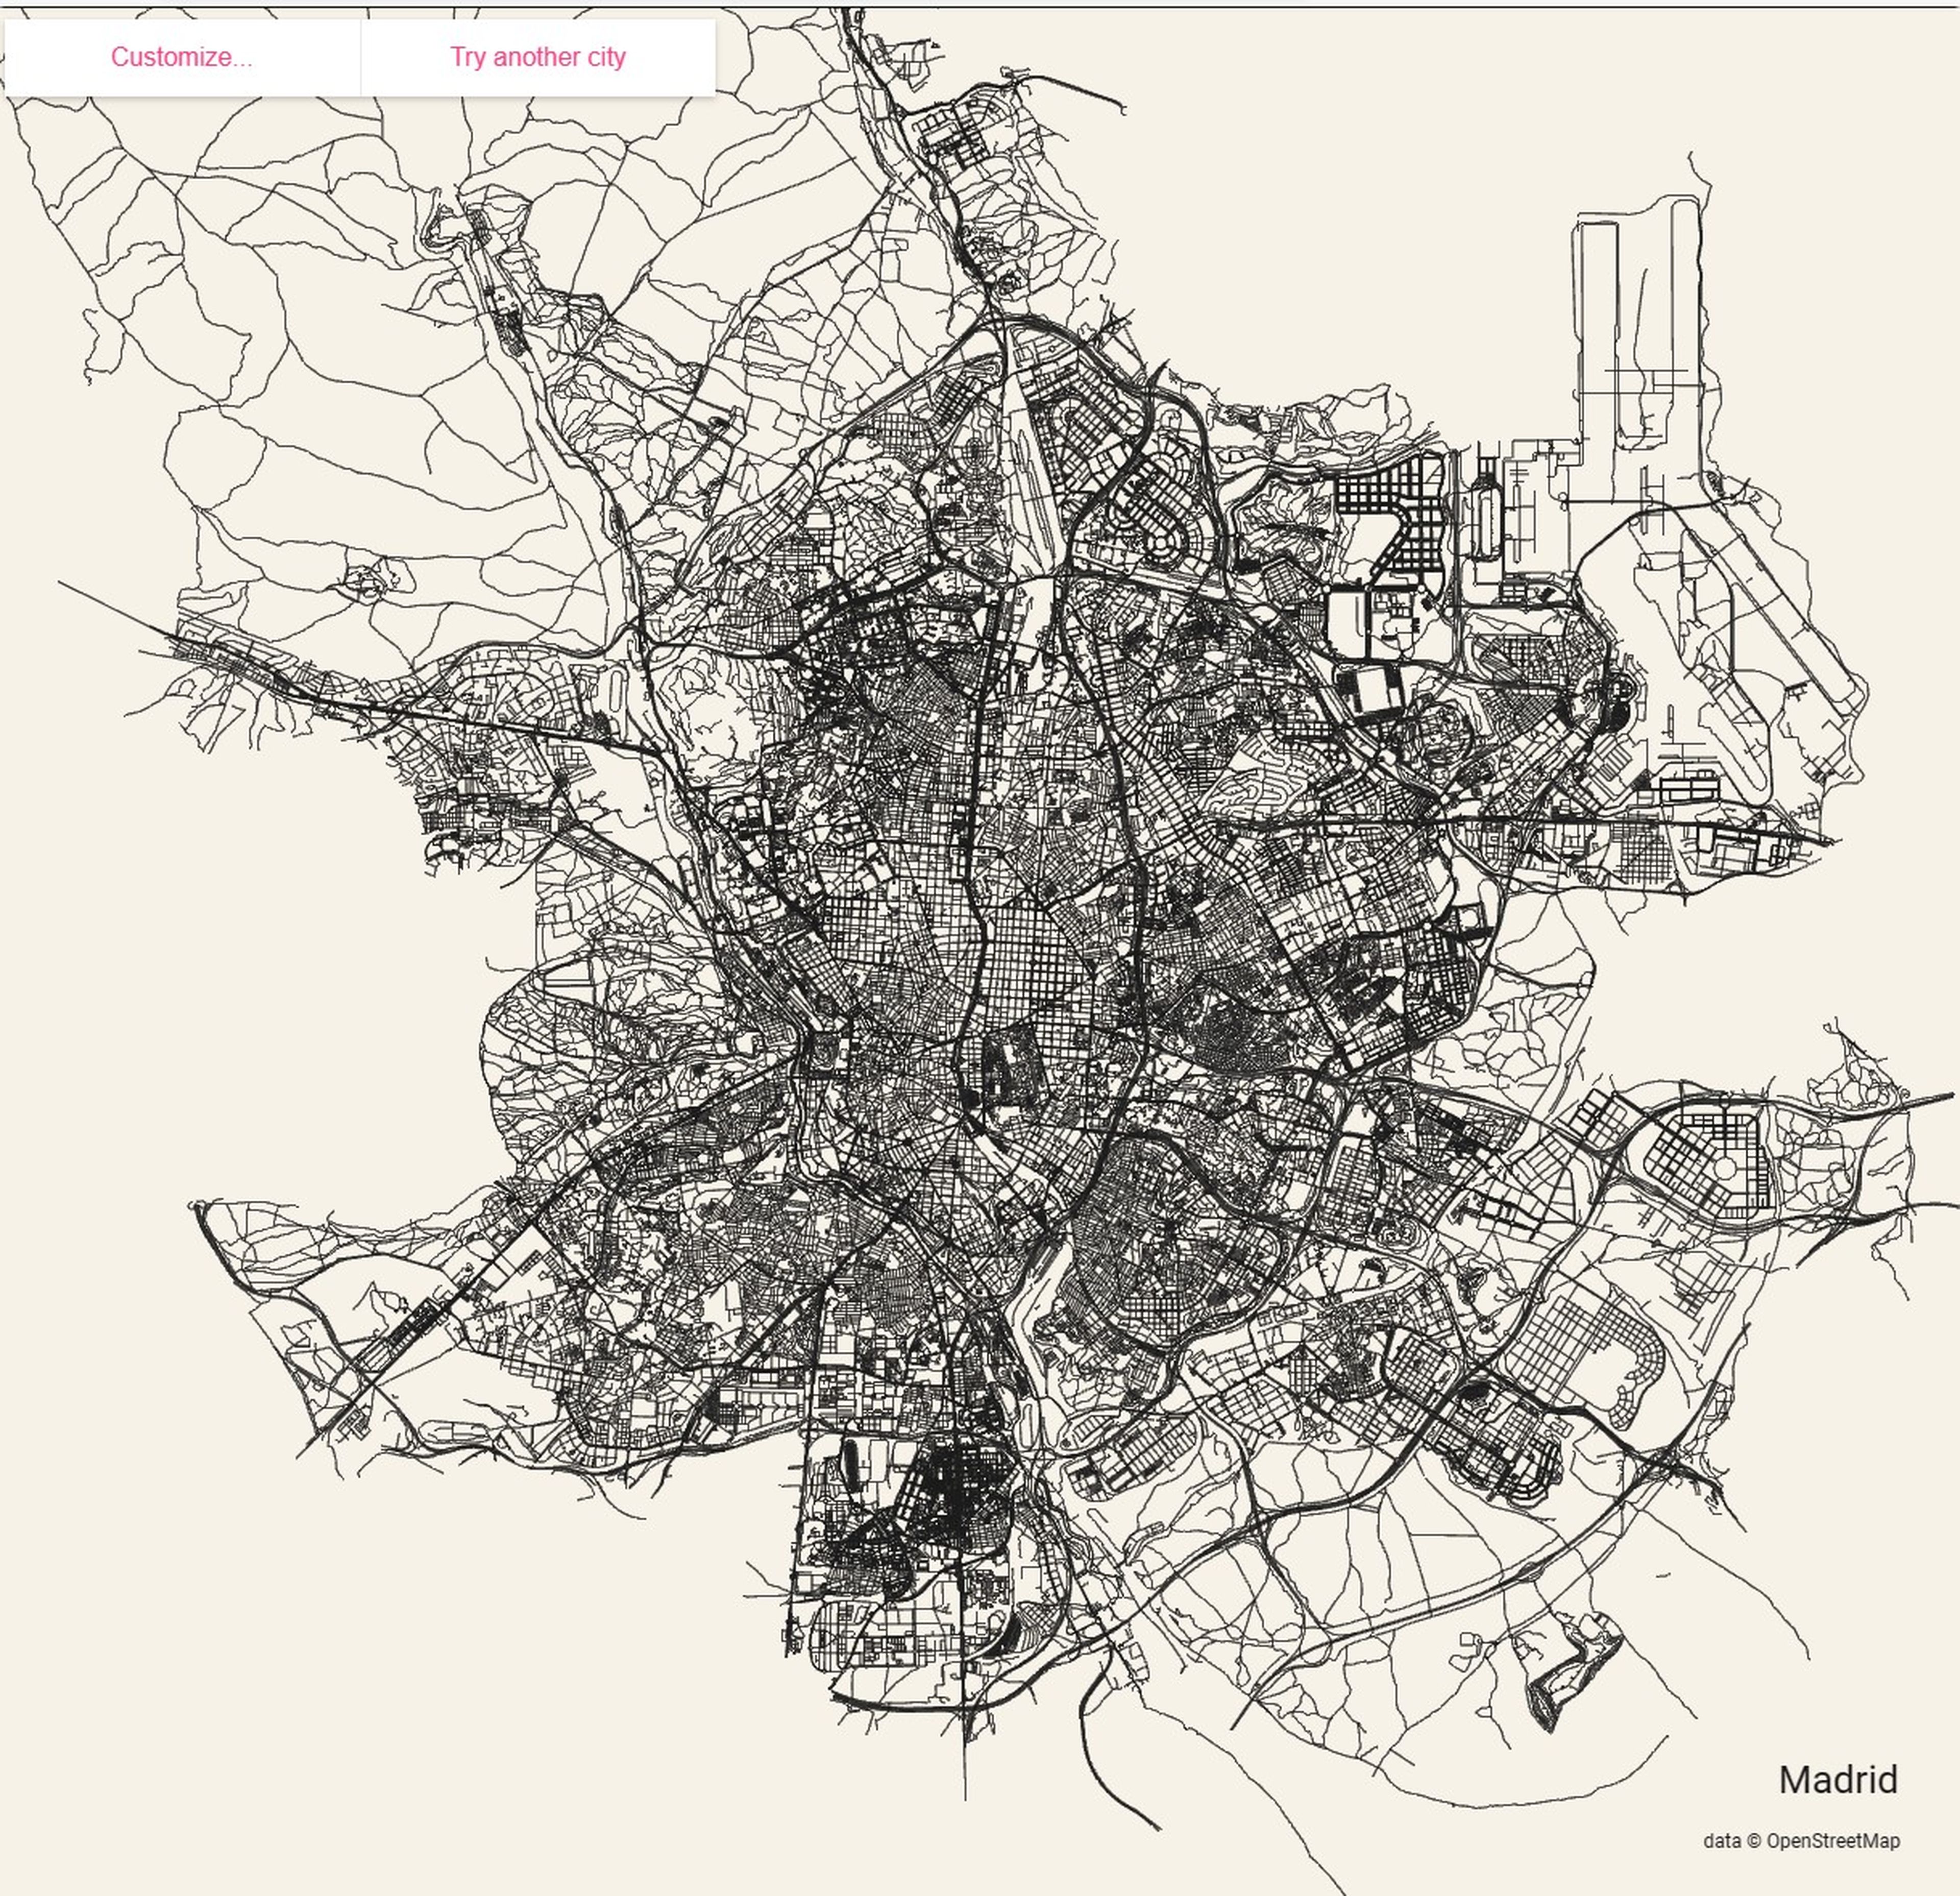 Diseña tu propio póster personalizado con el mapa de tu ciudad favorita